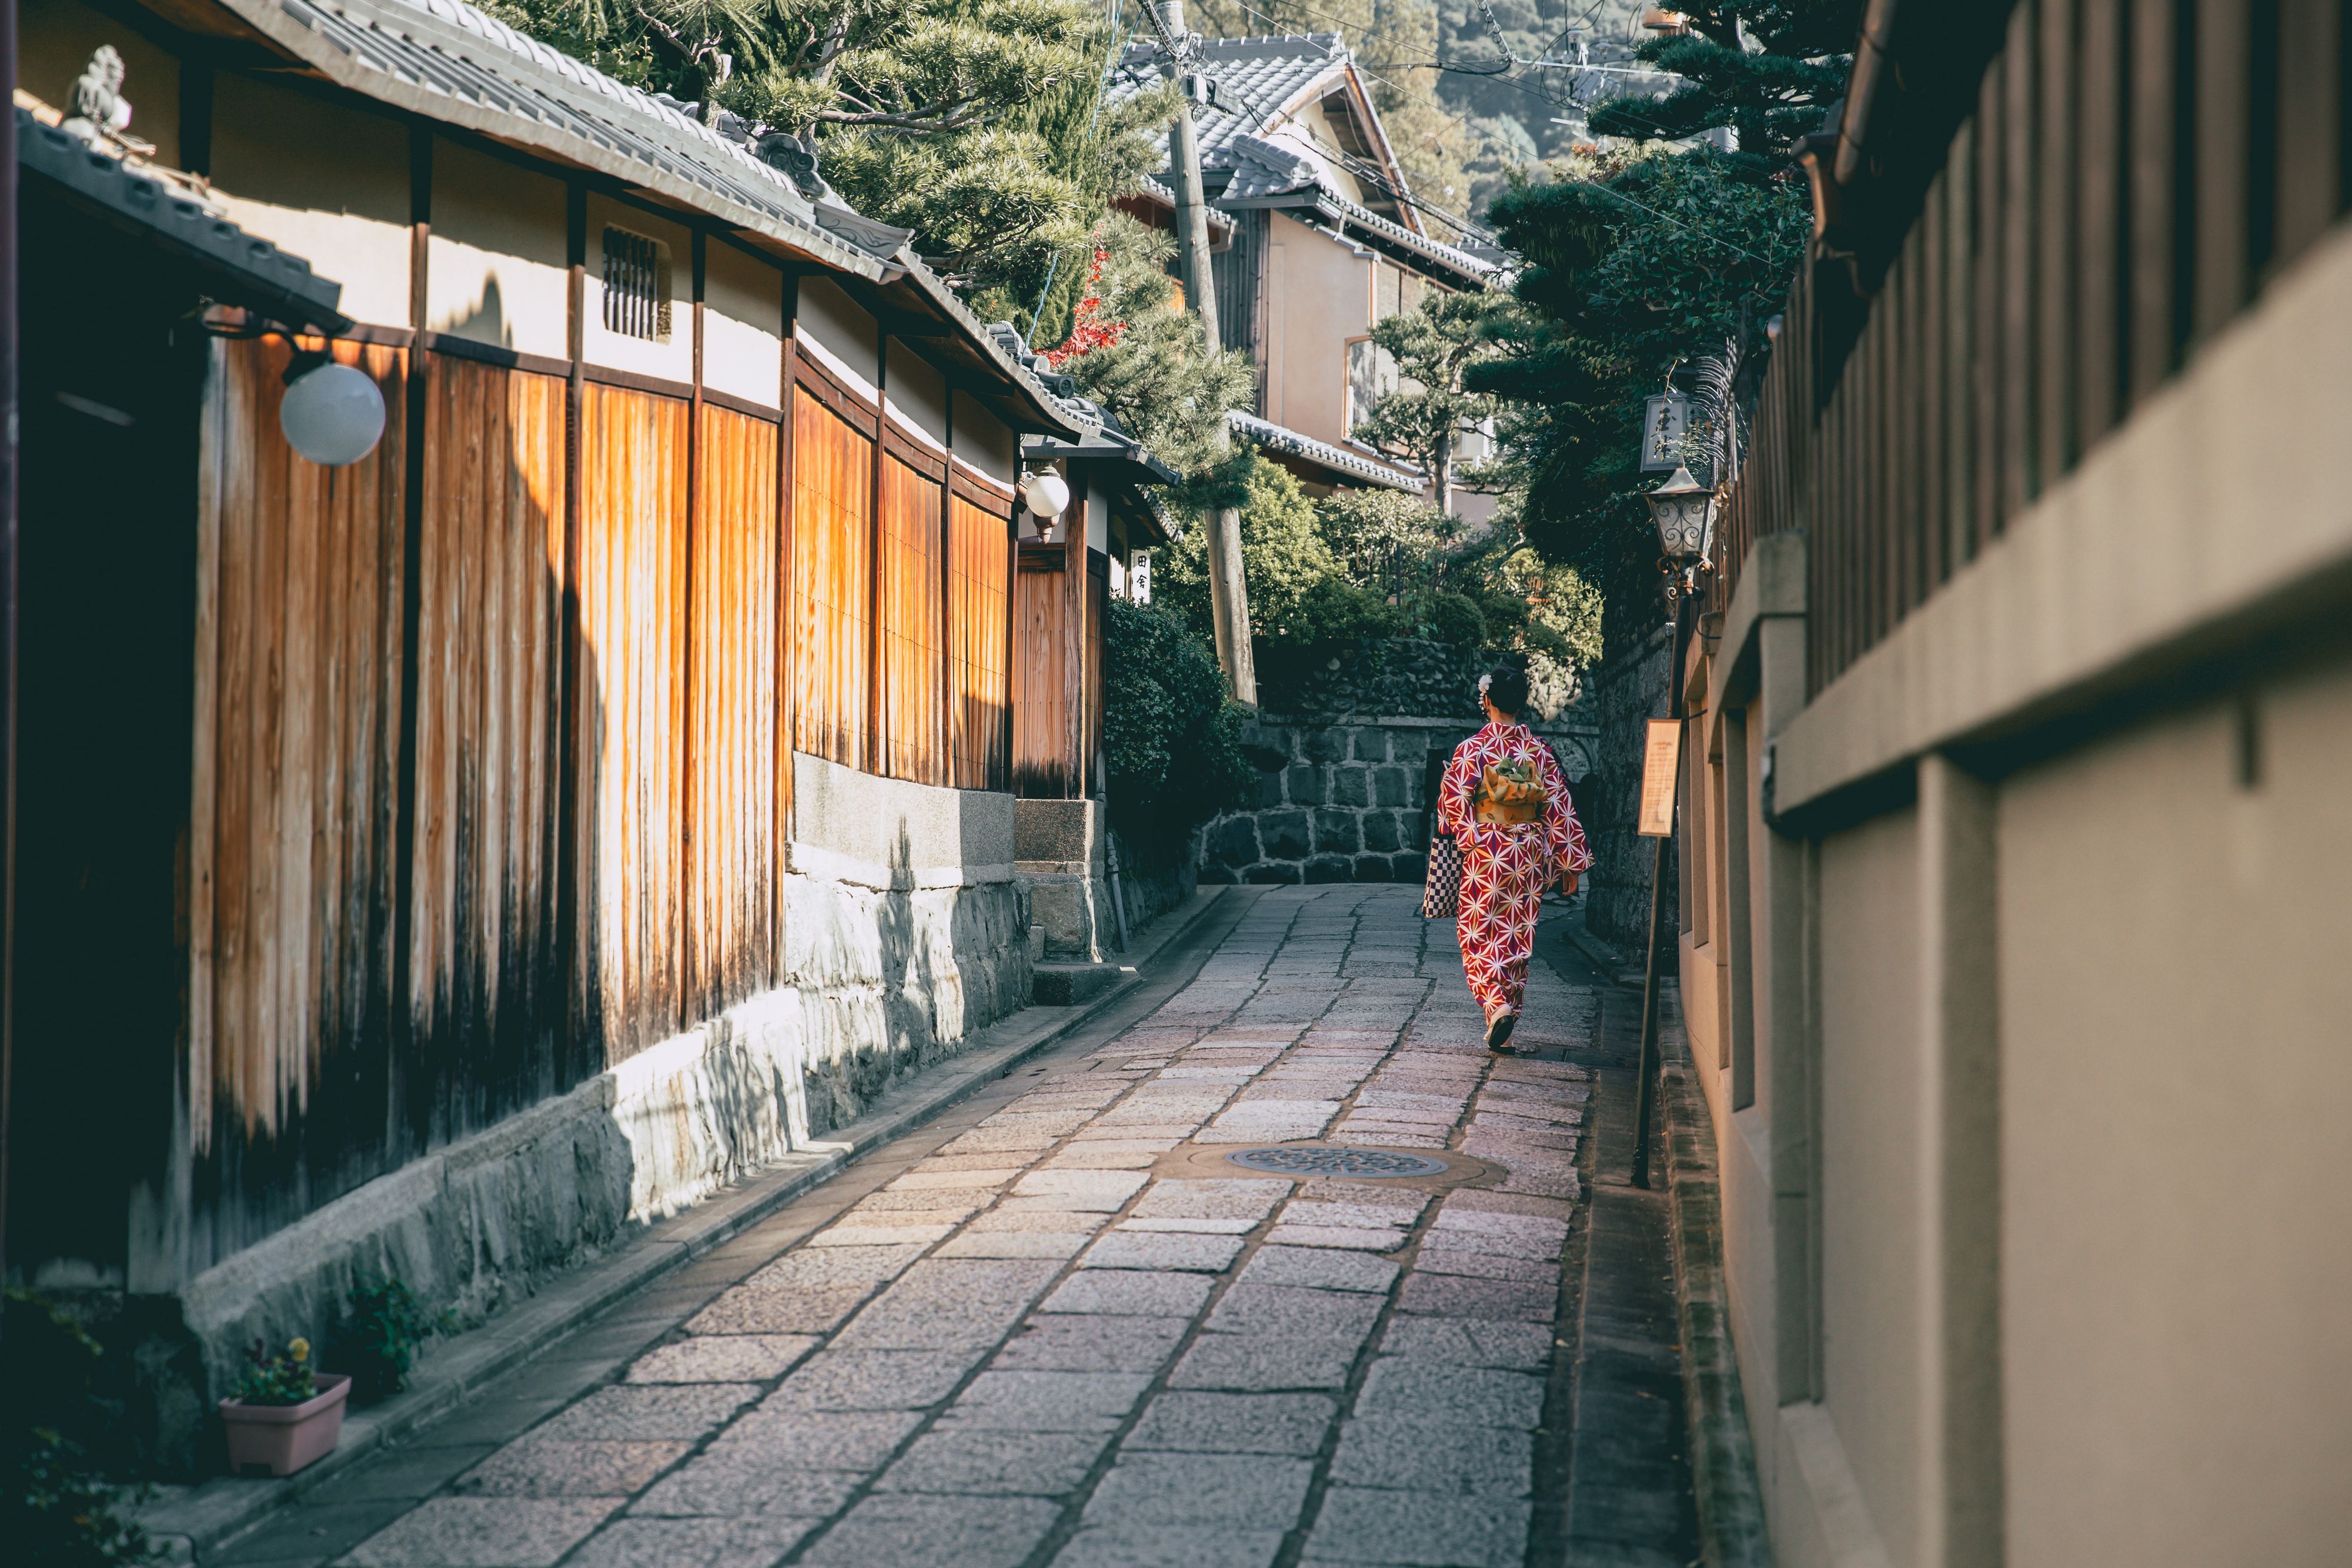 Les ruelles du quartier des geishas de Kyoto bientôt interdites aux touristes